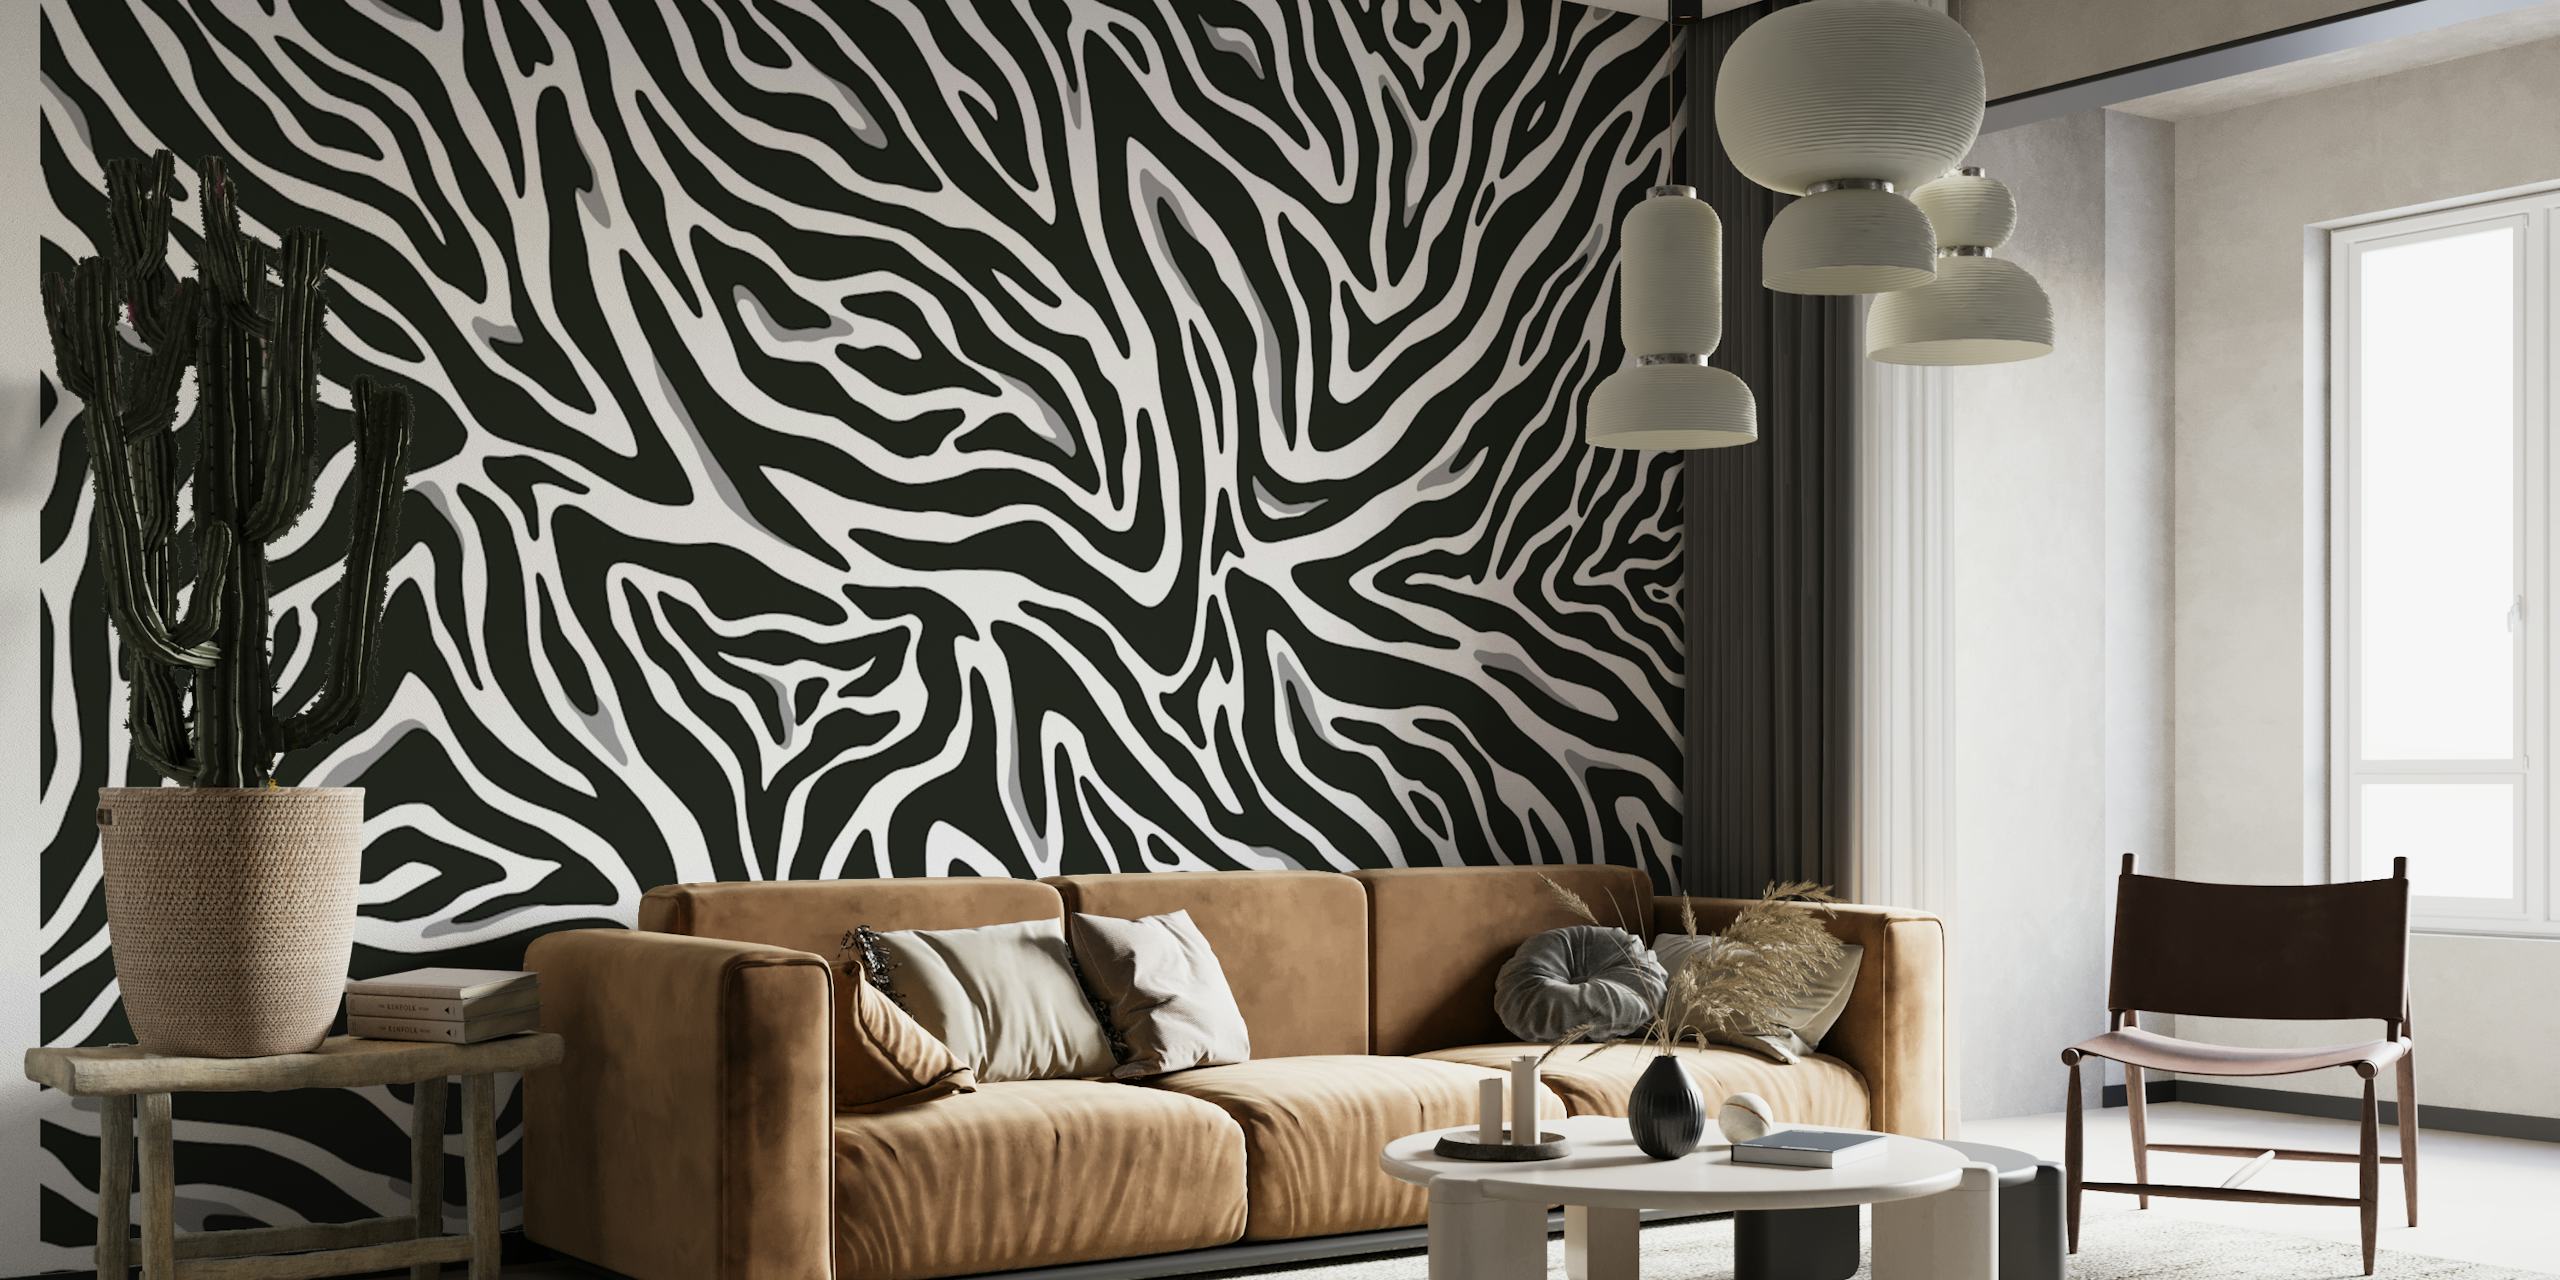 Zebra pattern II wallpaper